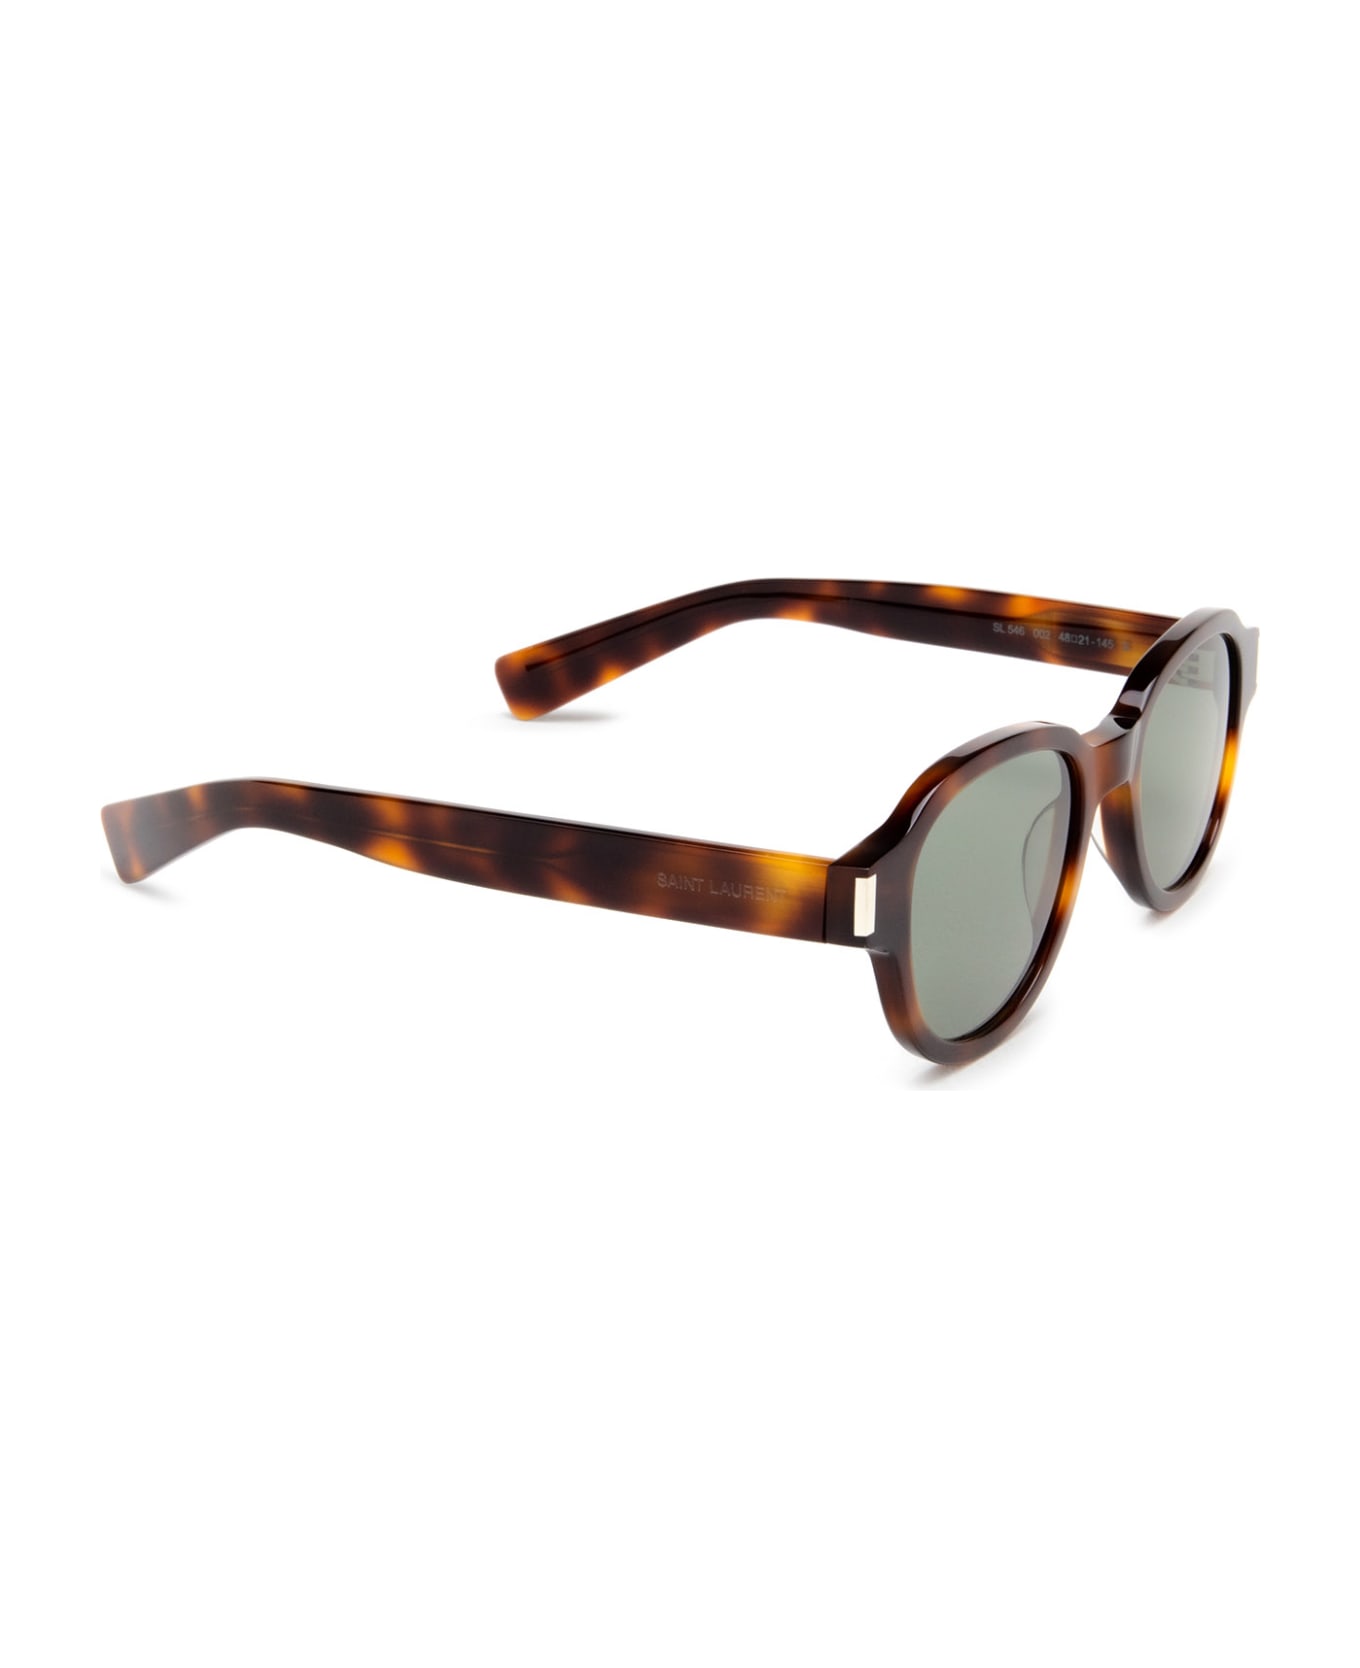 Saint Laurent Eyewear Sl 546 Havana Sunglasses - Havana